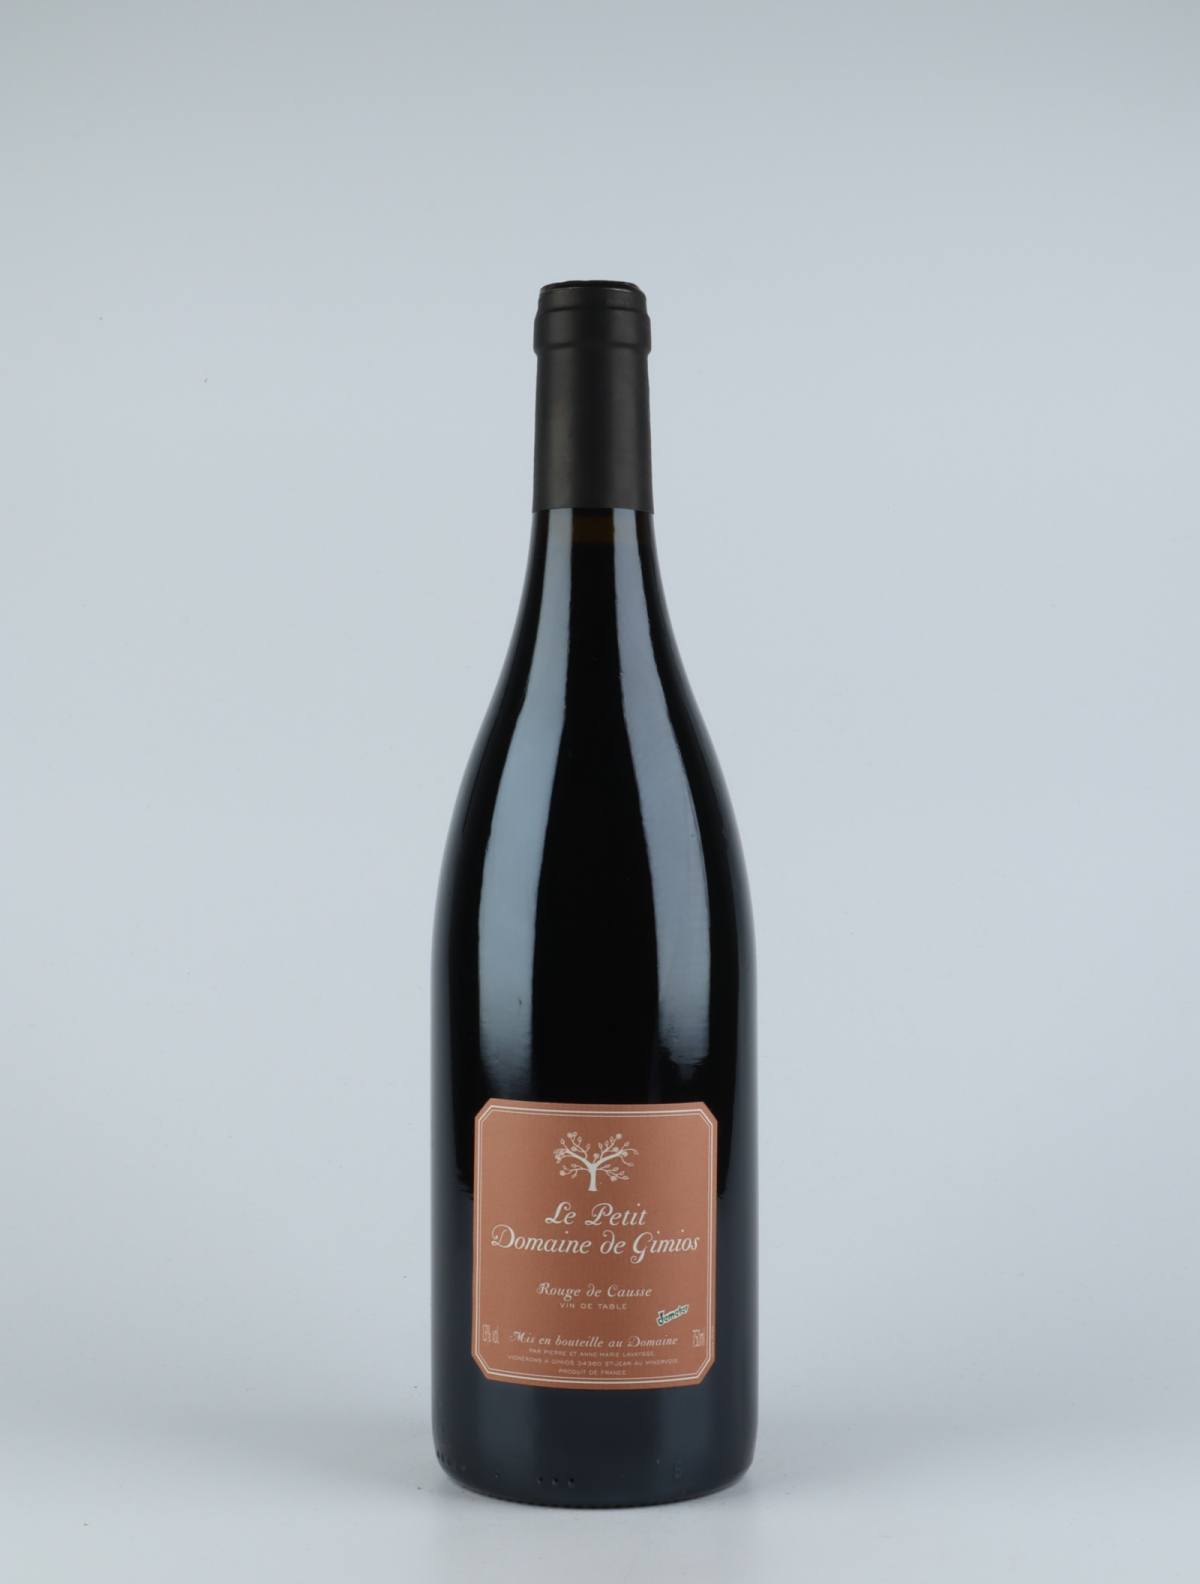 A bottle 2016 Rouge de Causse Red wine from Le Petit Domaine de Gimios, Rousillon in France